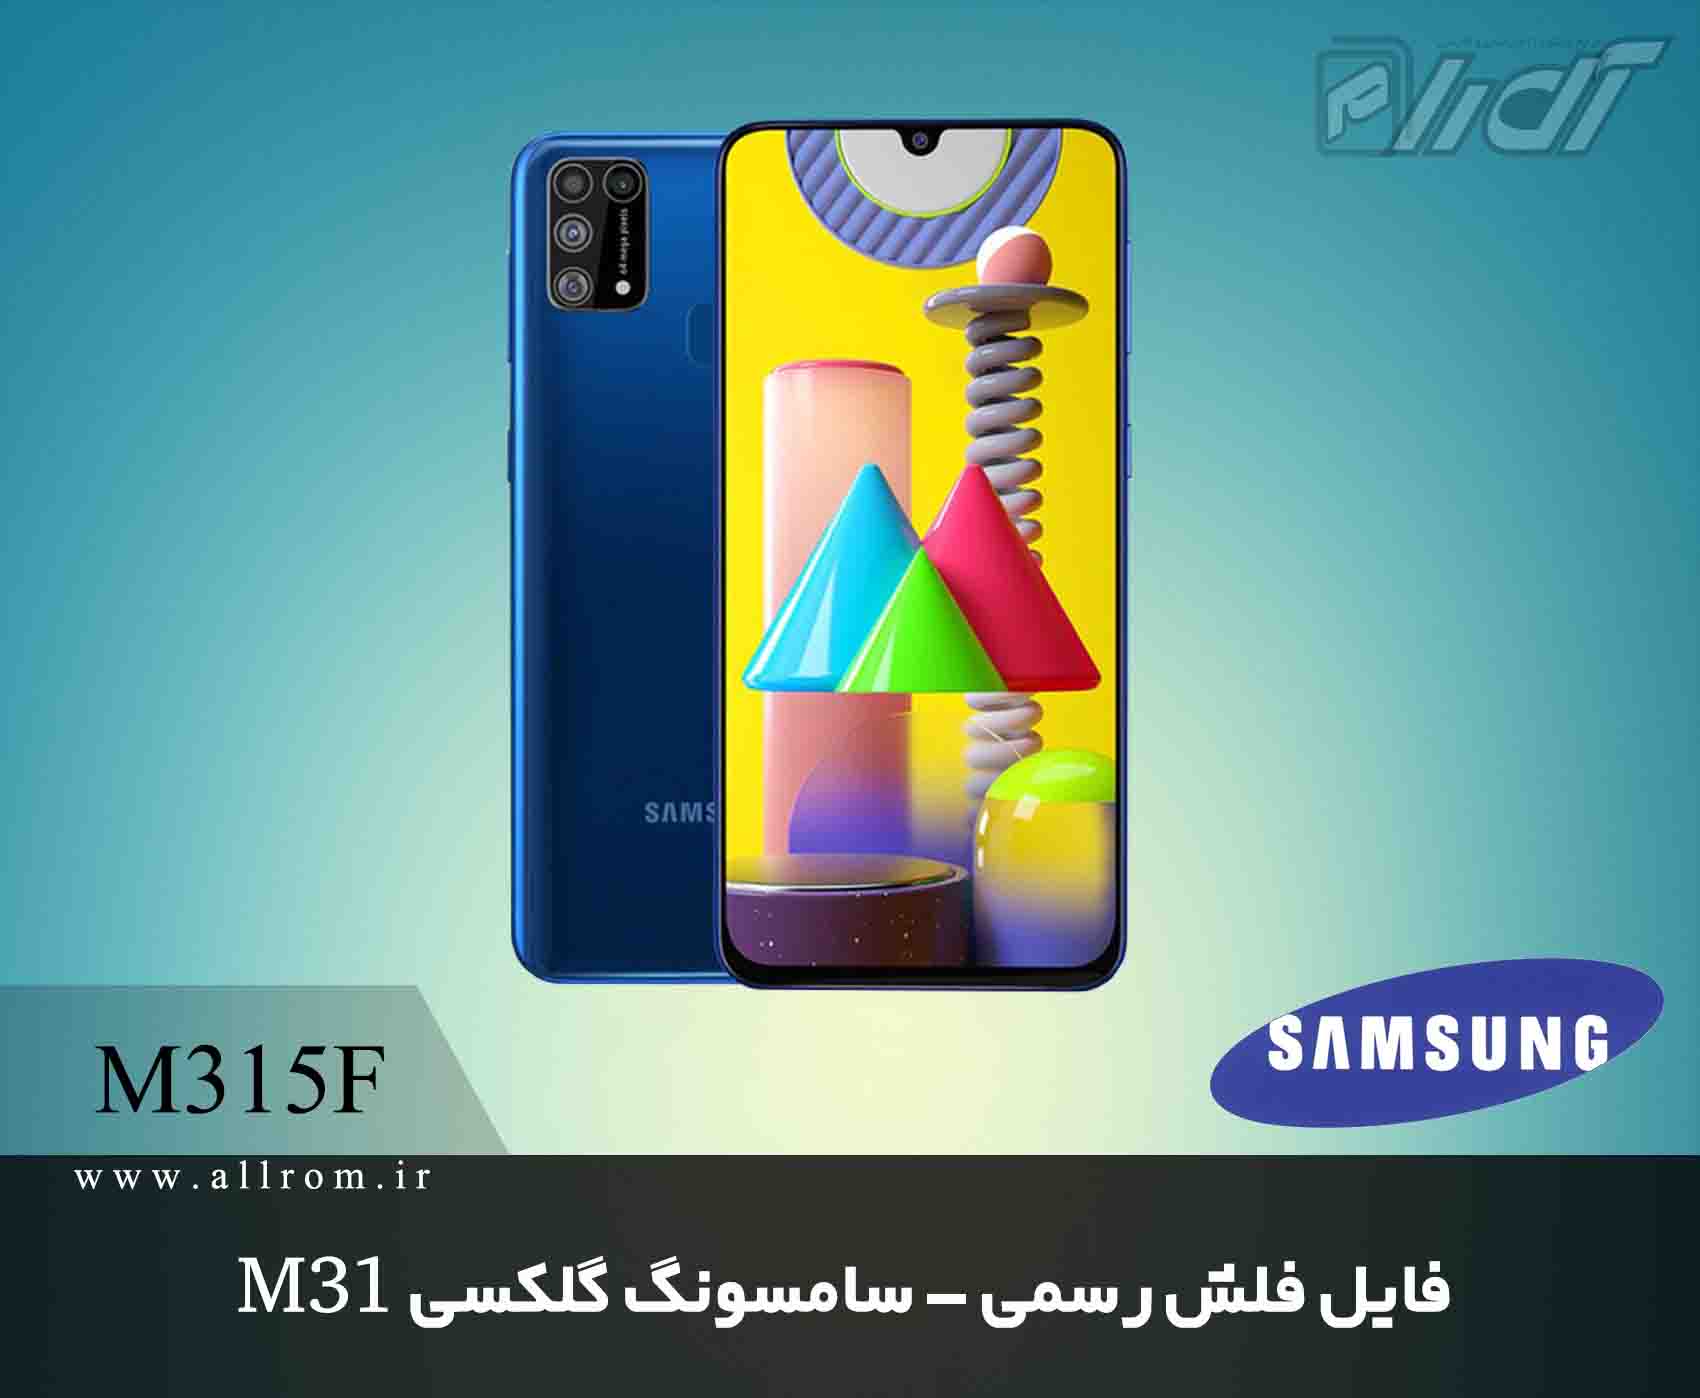 دانلود رام کامبینیشن Samsung Galaxy M31 SM-M315F